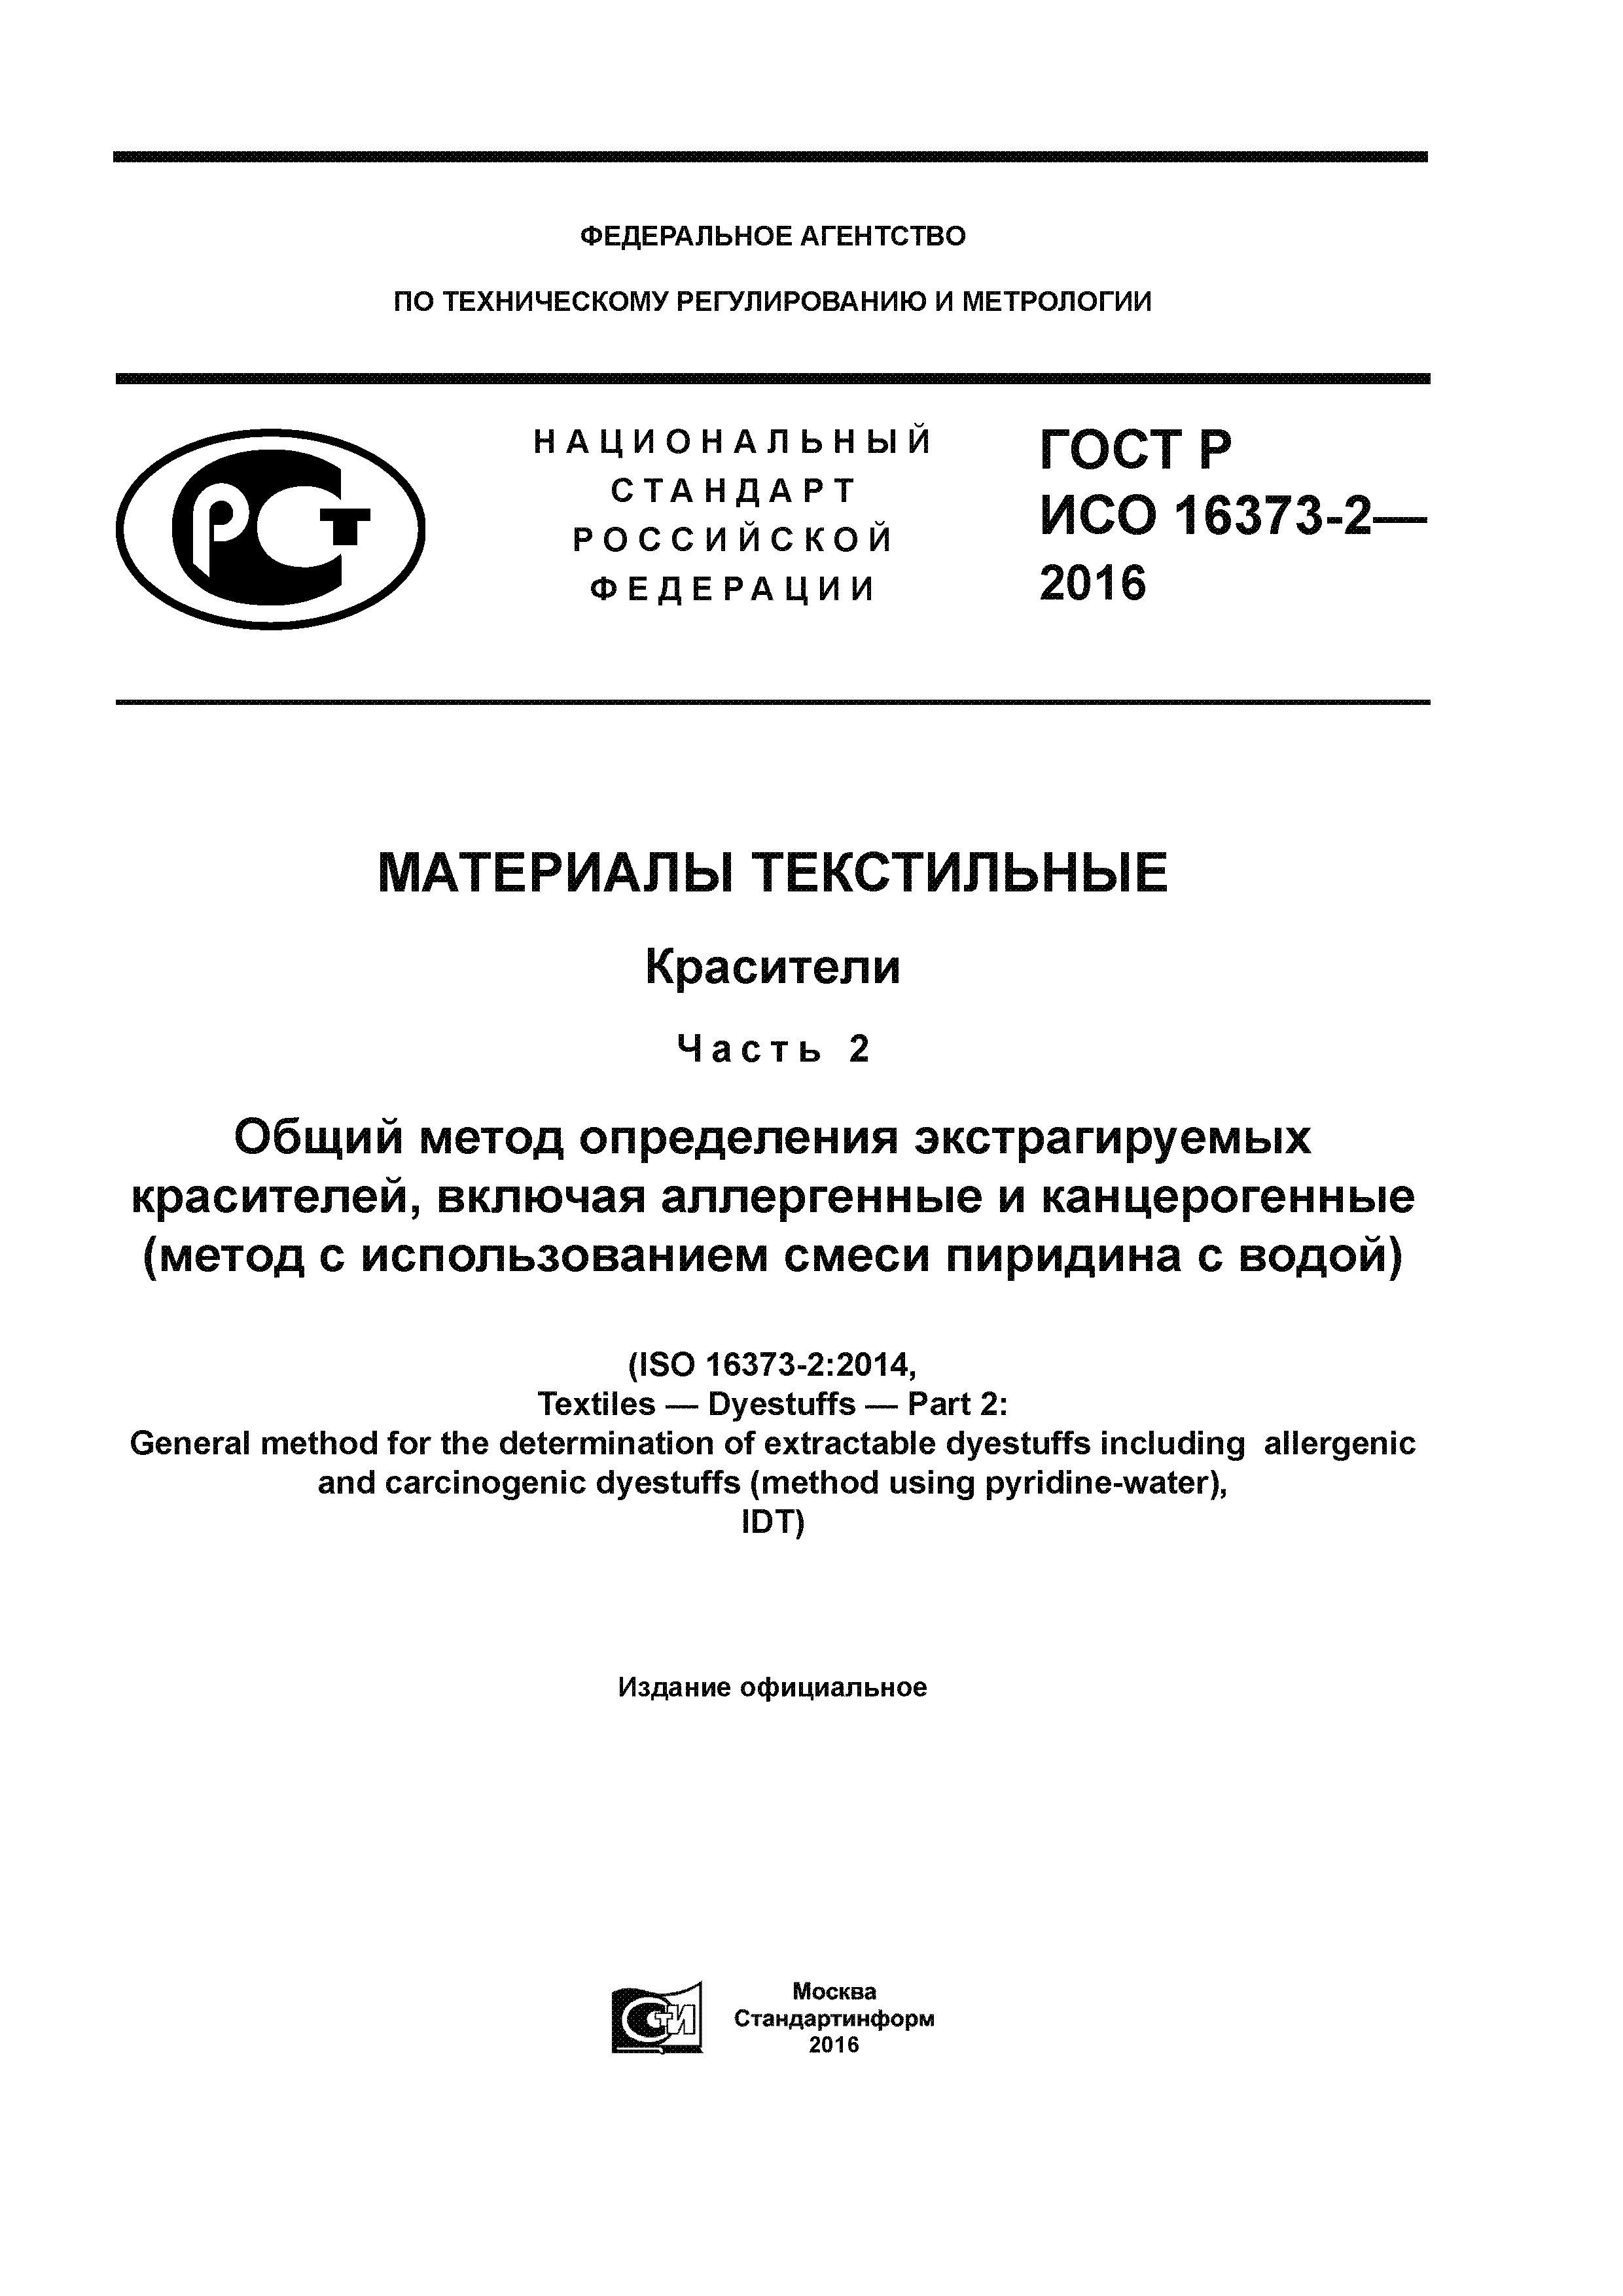 ГОСТ Р ИСО 16373-2-2016